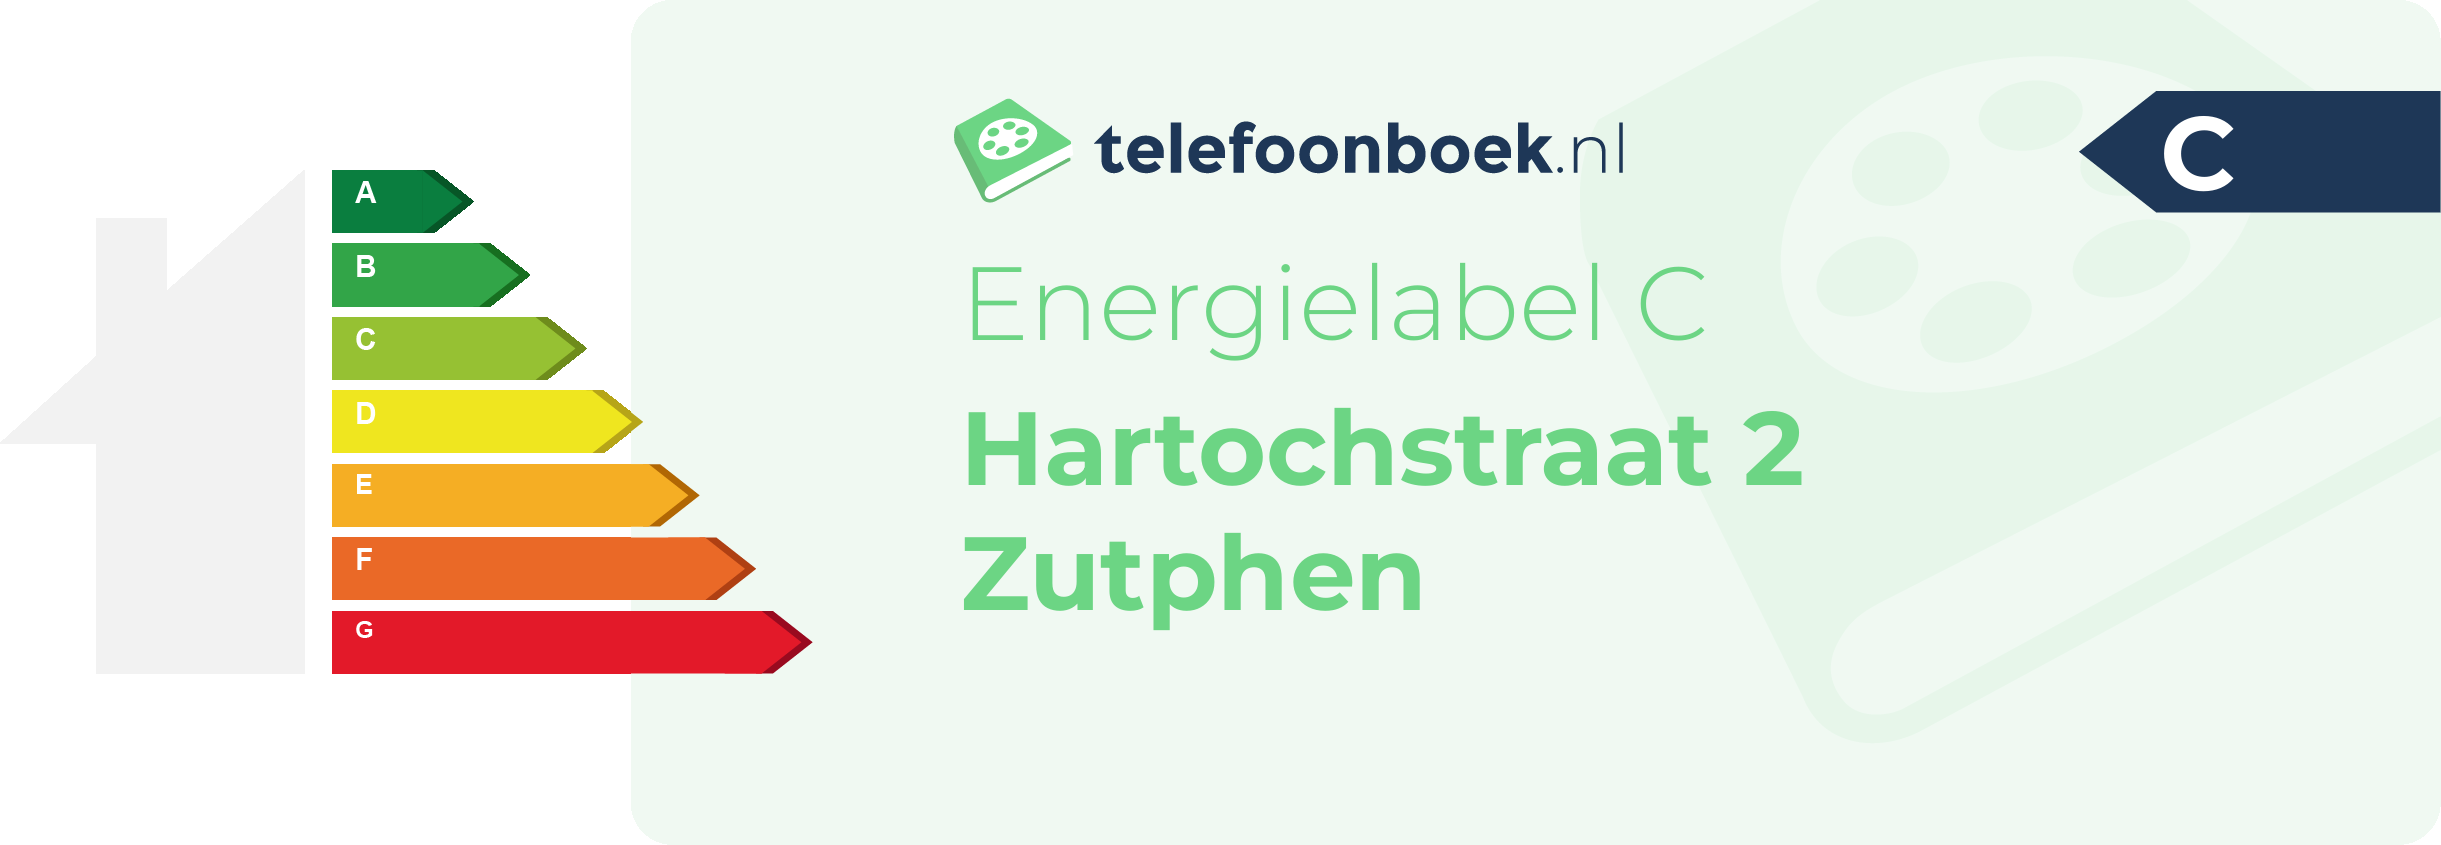 Energielabel Hartochstraat 2 Zutphen